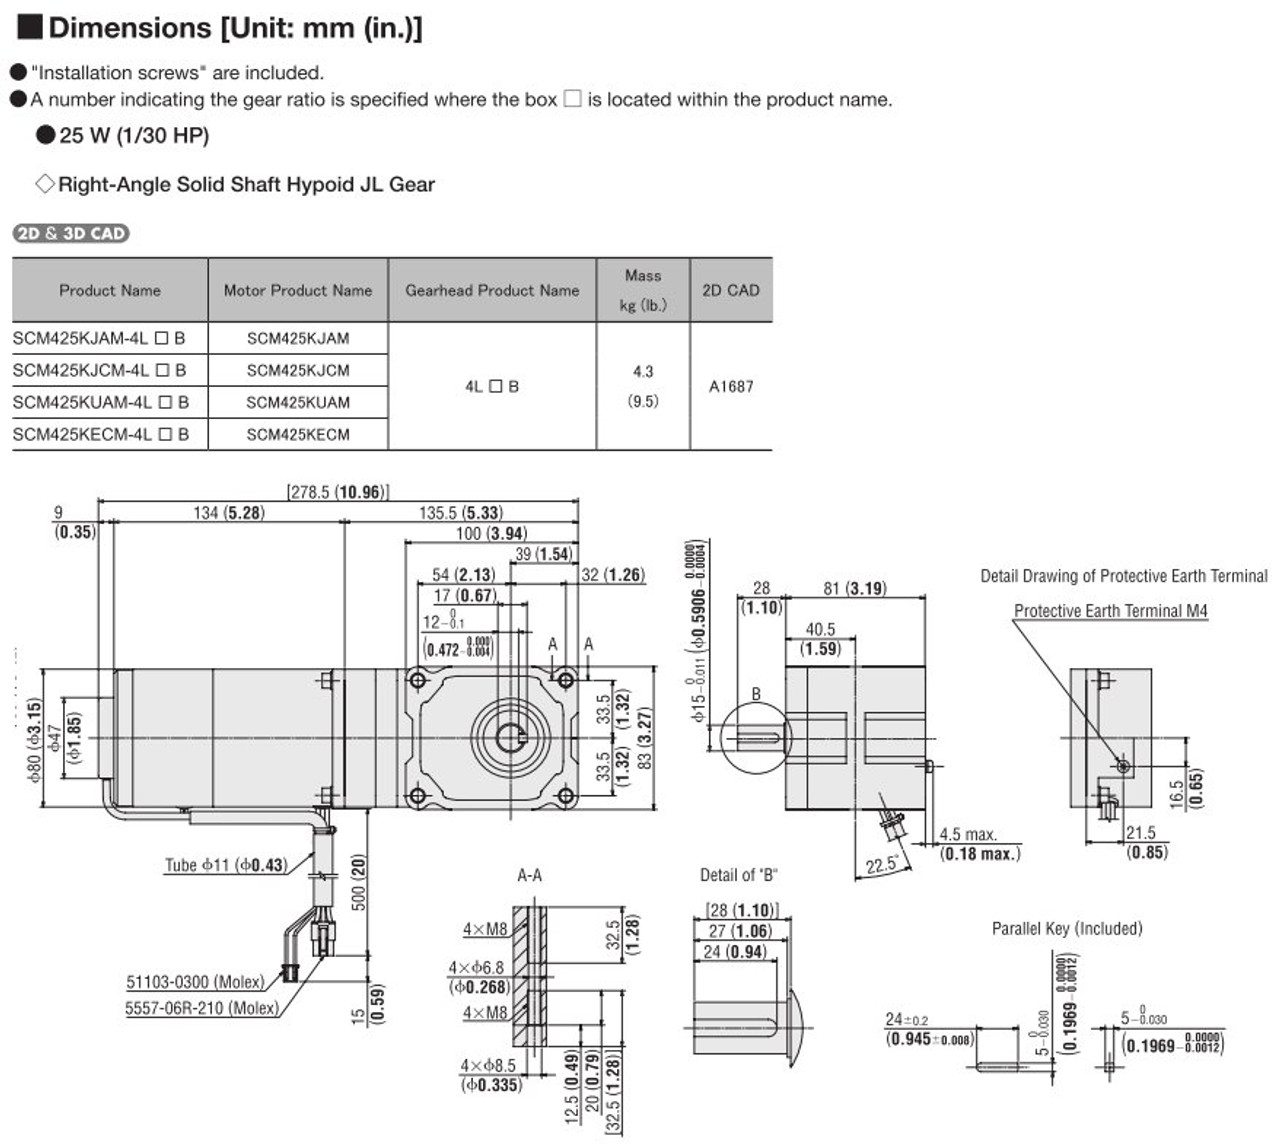 SCM425KECM-4L100B - Dimensions